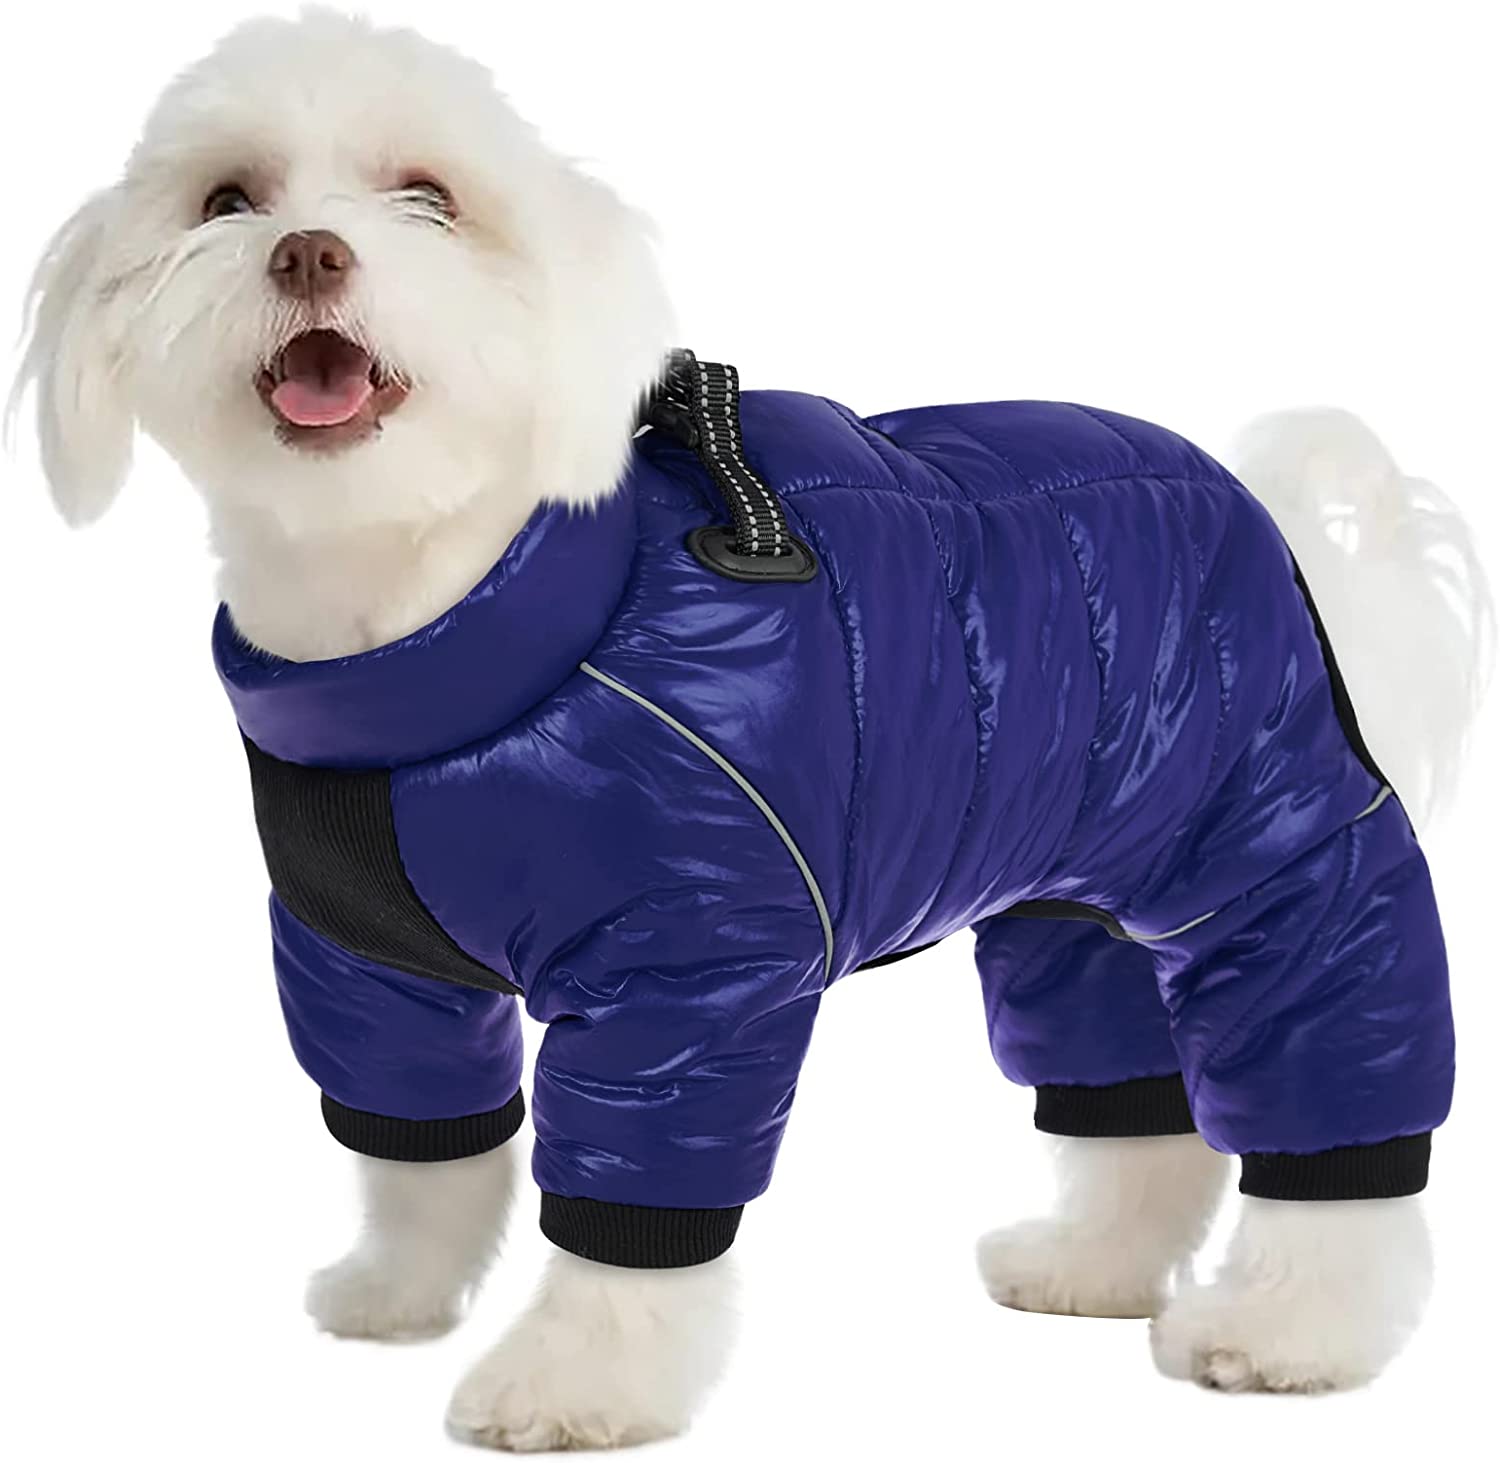 کت سگ AOFITEE، کت سگ ضد آب برای زمستان، لباس برفی تمام بدن سگ گرم، جلیقه سگ پشمی زیپ دار، کت سگ در هوای سرد با نوارهای انعکاسی، پوشاک سگ ضد باد در فضای باز برای سگ های کوچک